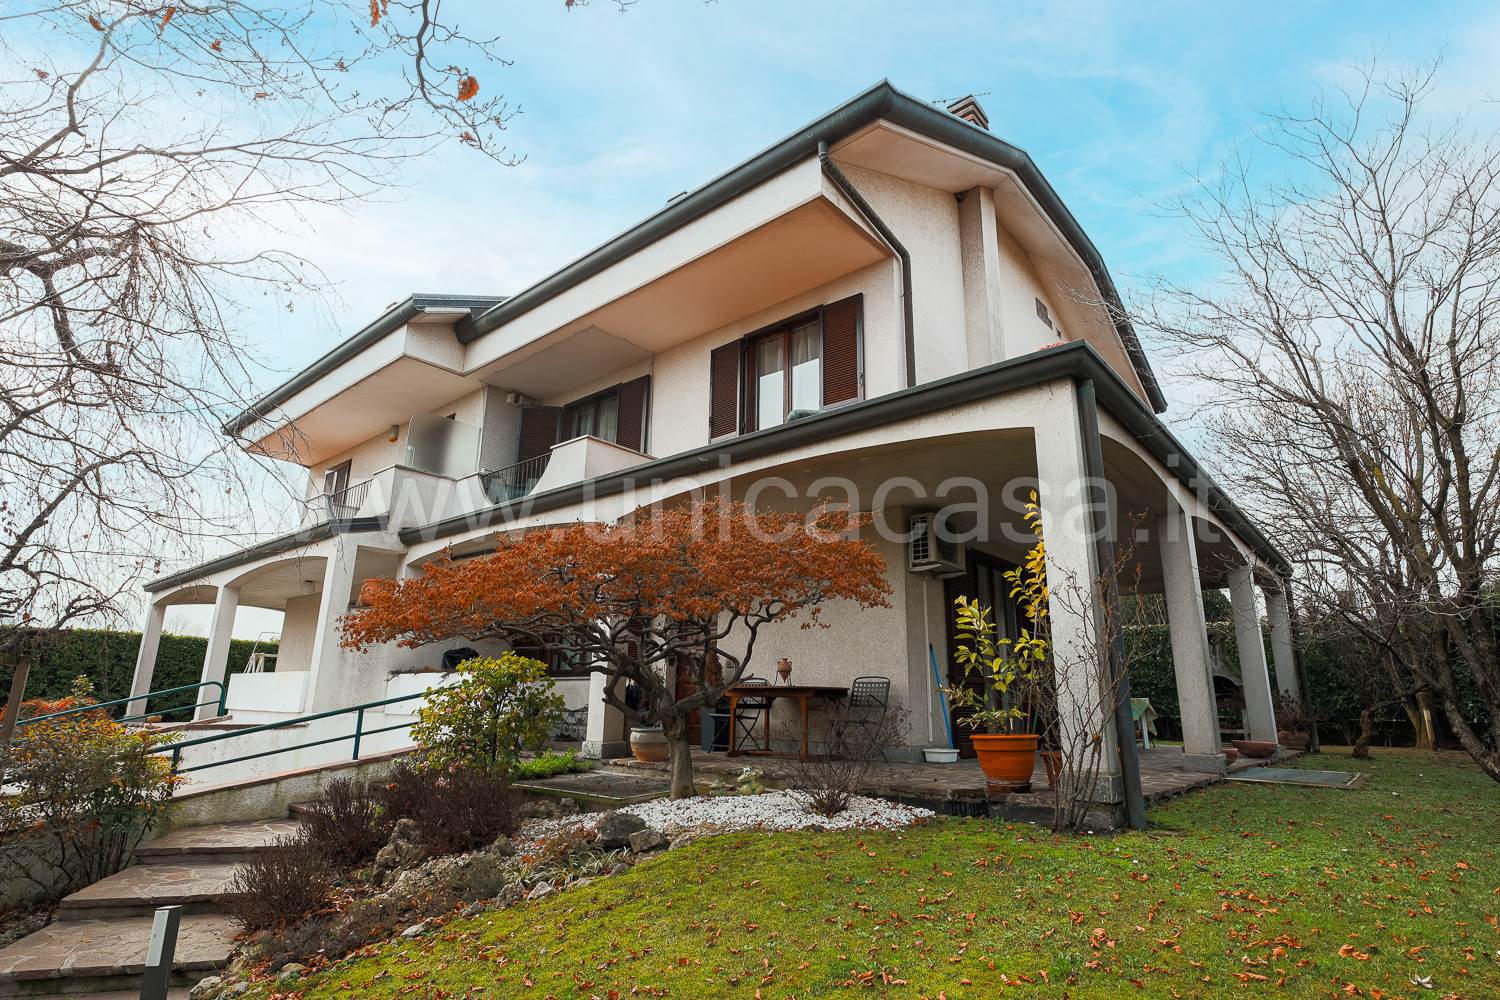 Villa Bifamiliare in vendita a Gessate, 5 locali, prezzo € 330.000 | PortaleAgenzieImmobiliari.it